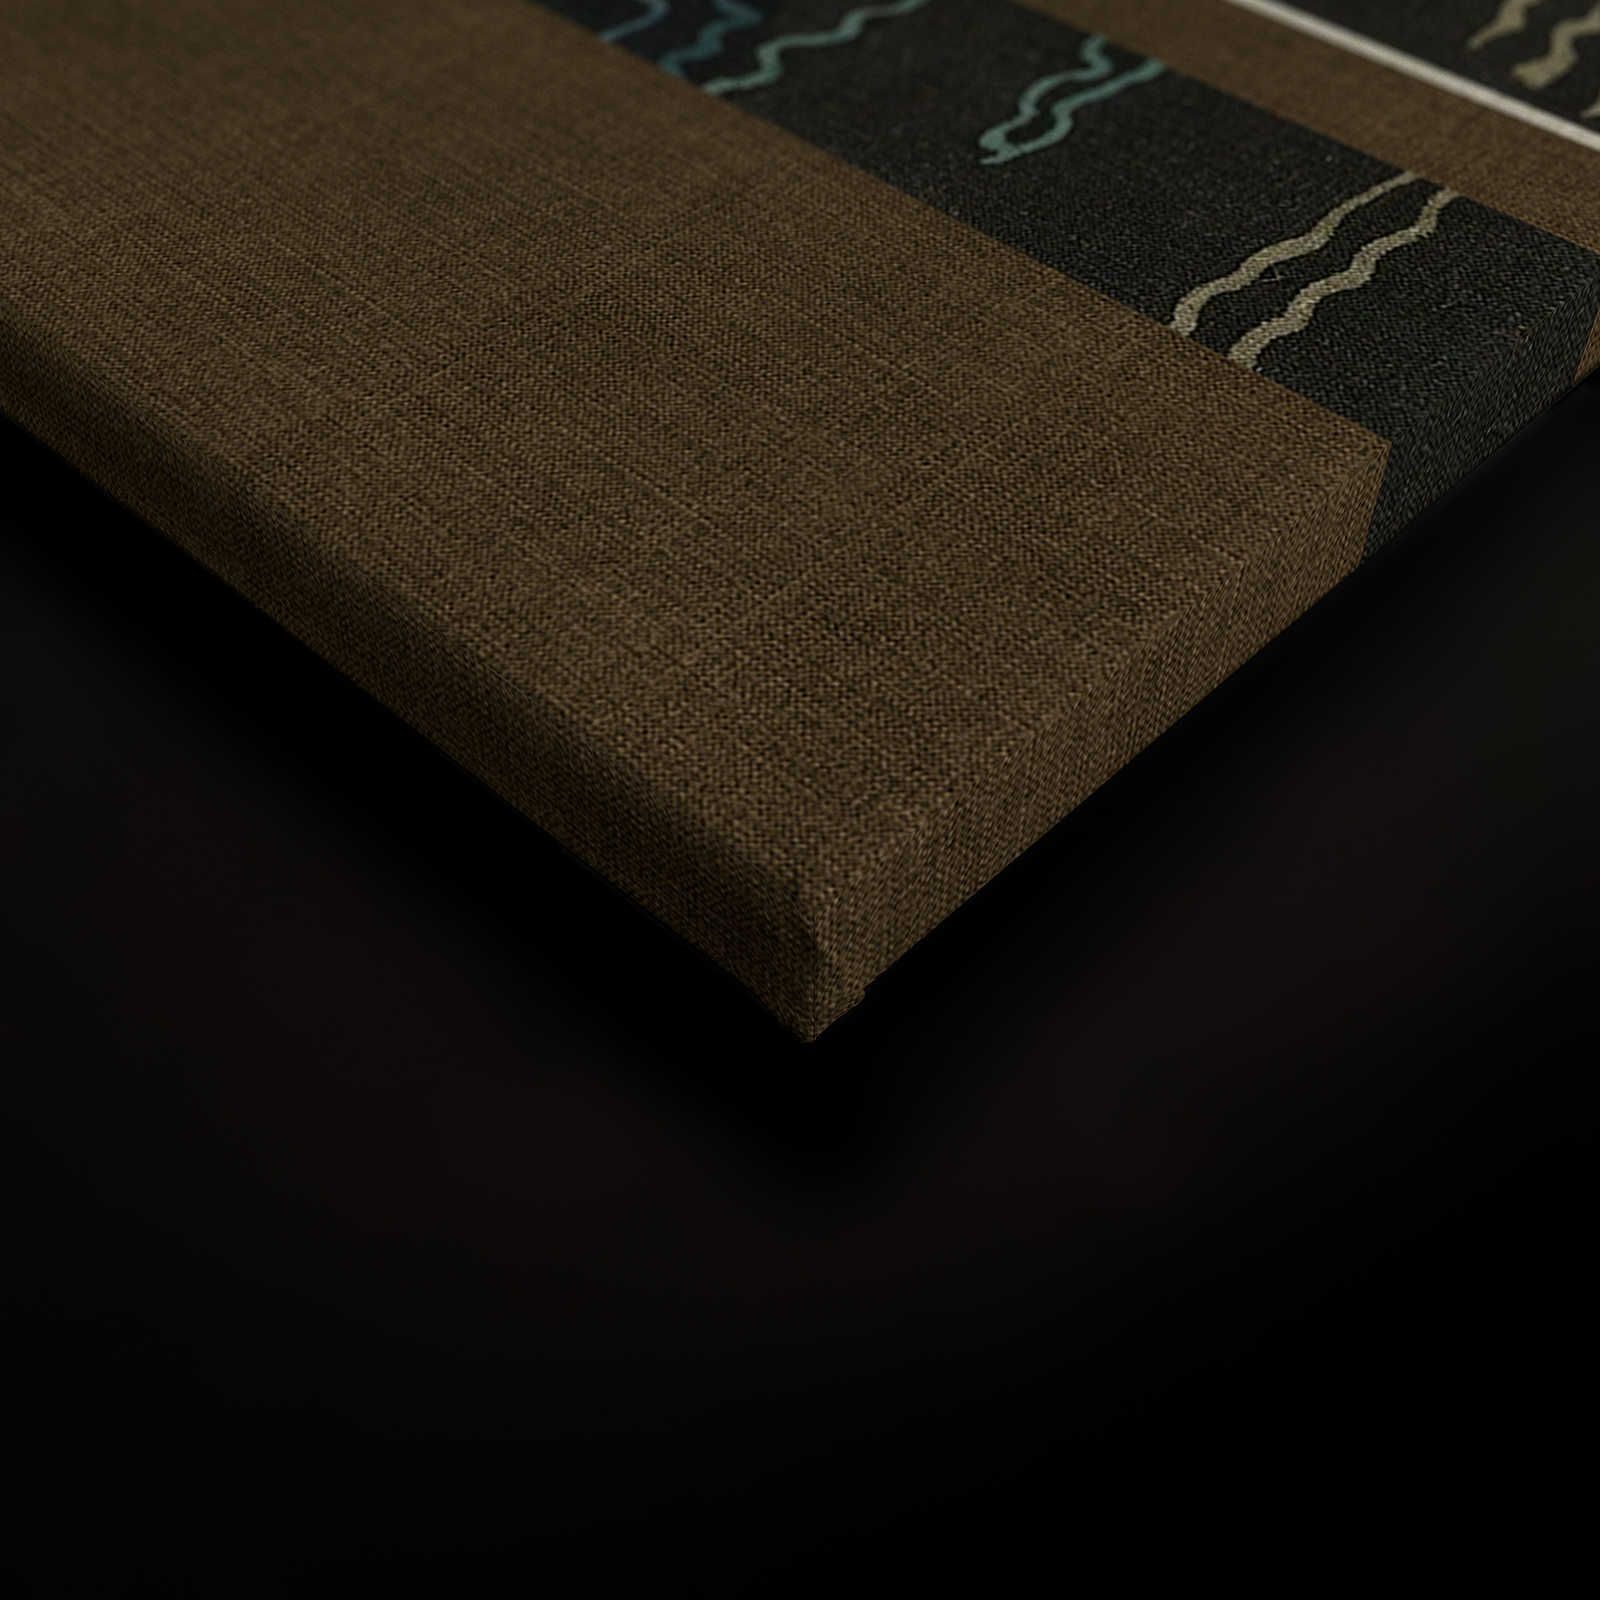             Adlon 4 - Quadro su tela nero-marrone dal design retrò asiatico - 0,90 m x 0,60 m
        